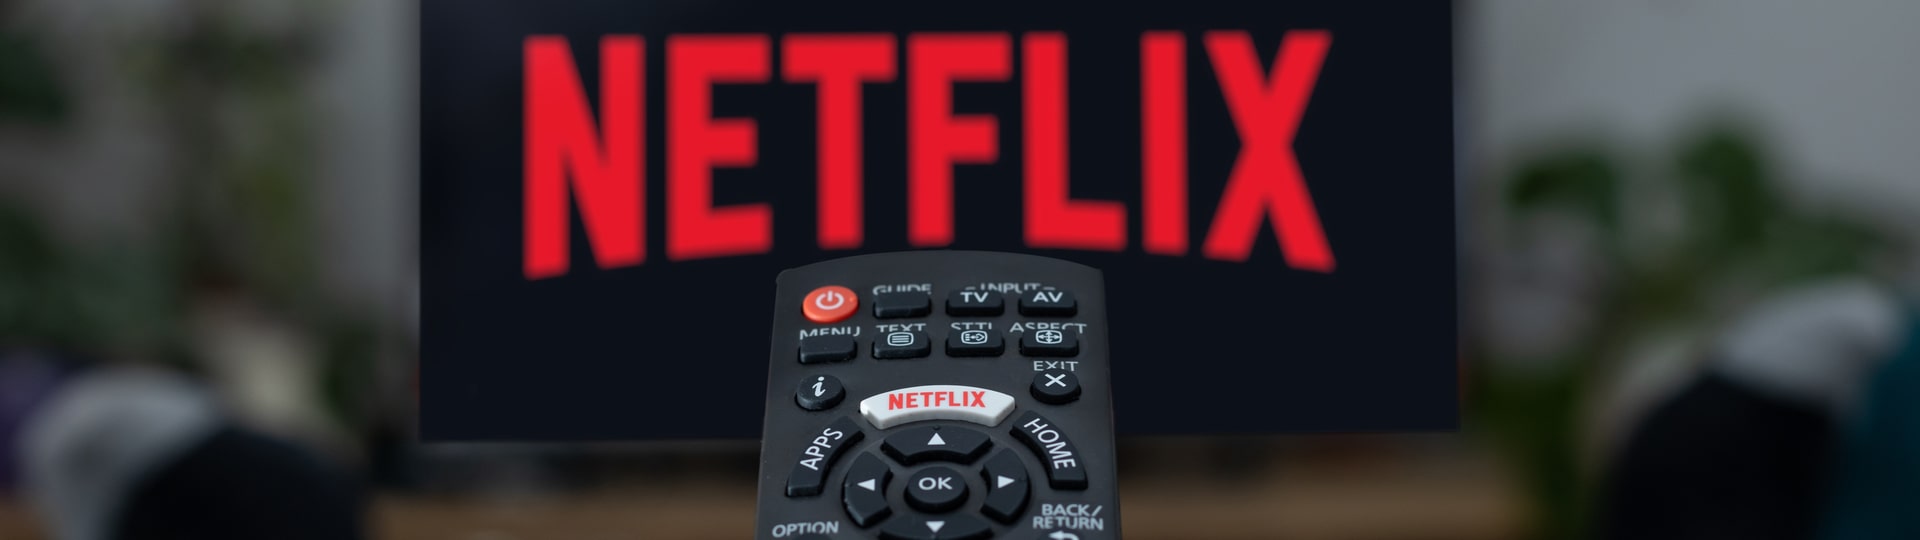 Netflix uvažuje o levnějším předplatném s reklamou